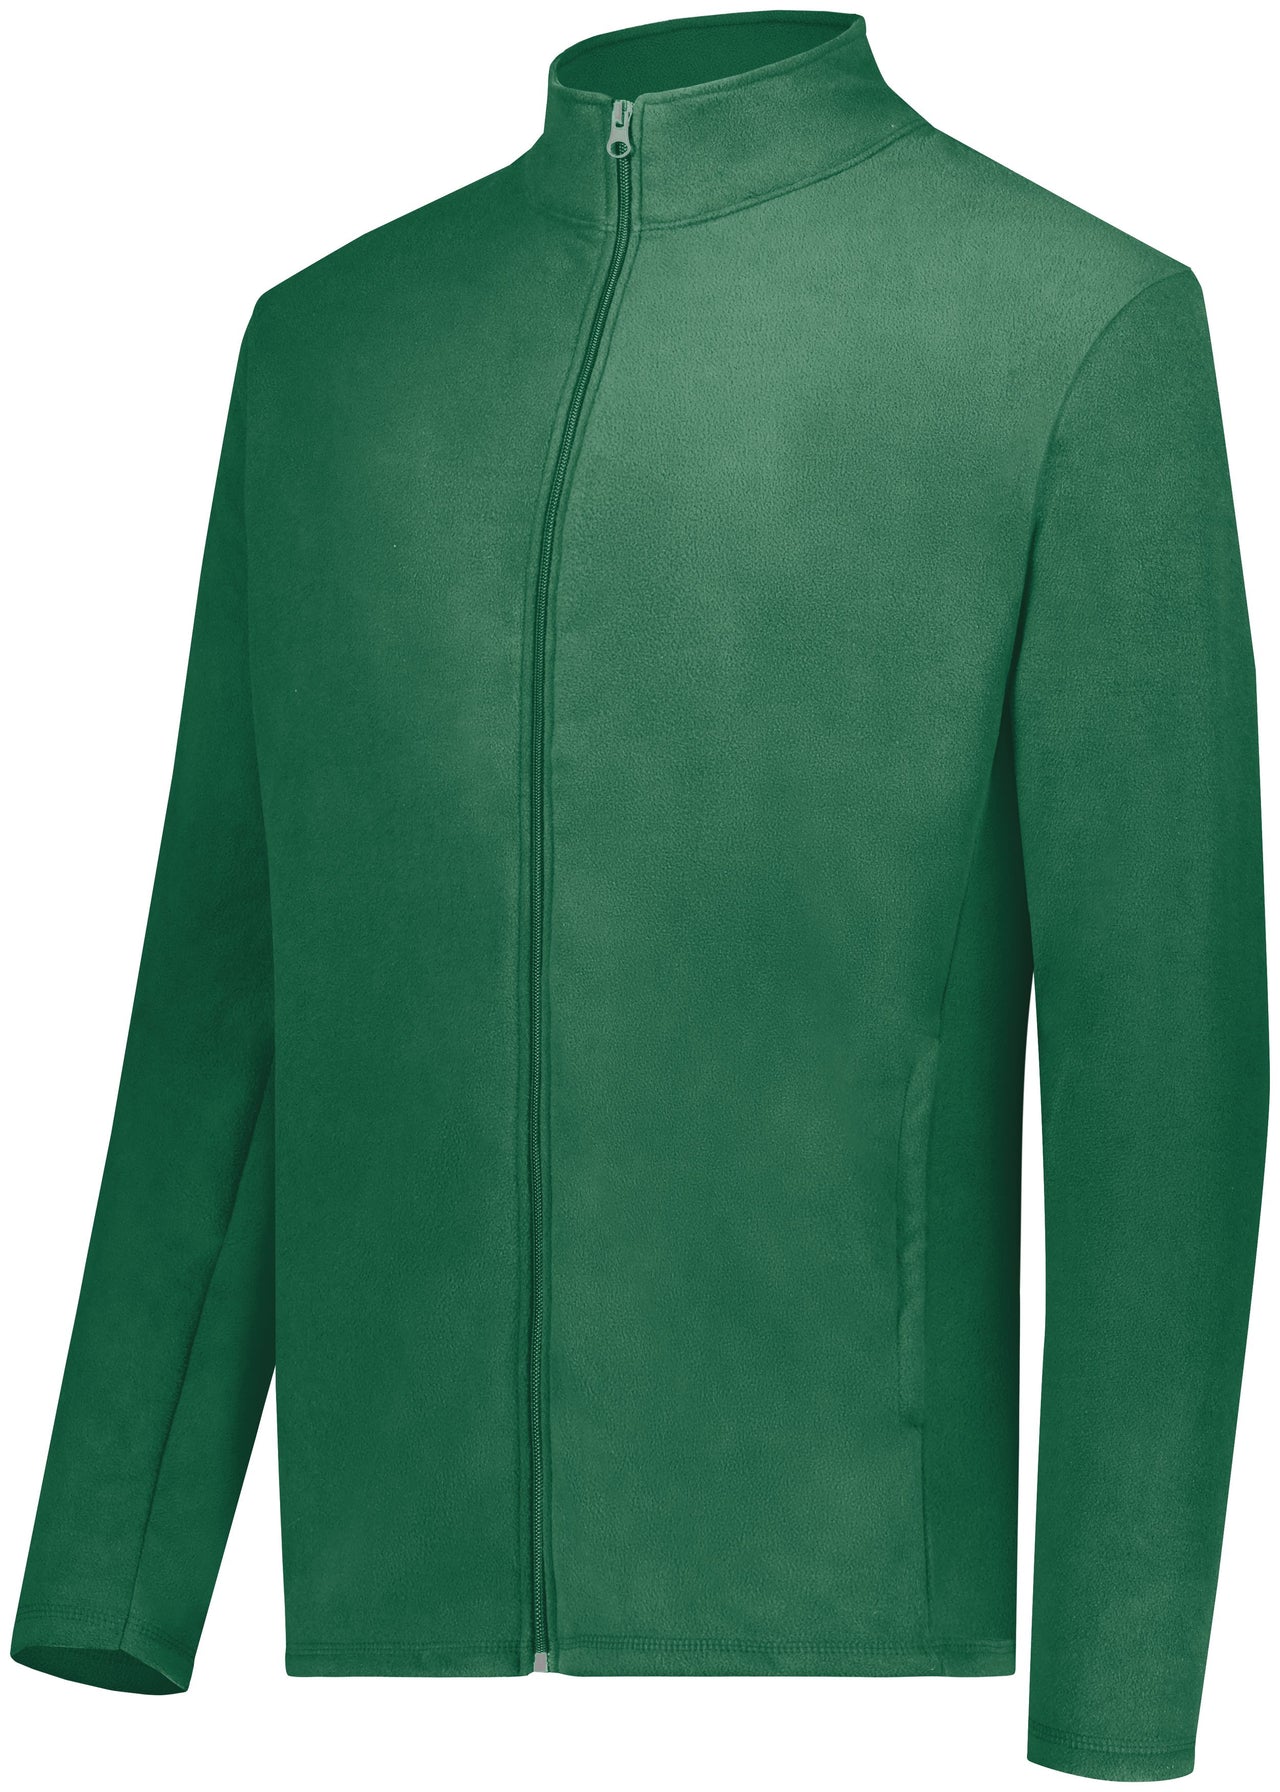 Micro-Lite Fleece Full Zip Jacket - 6861